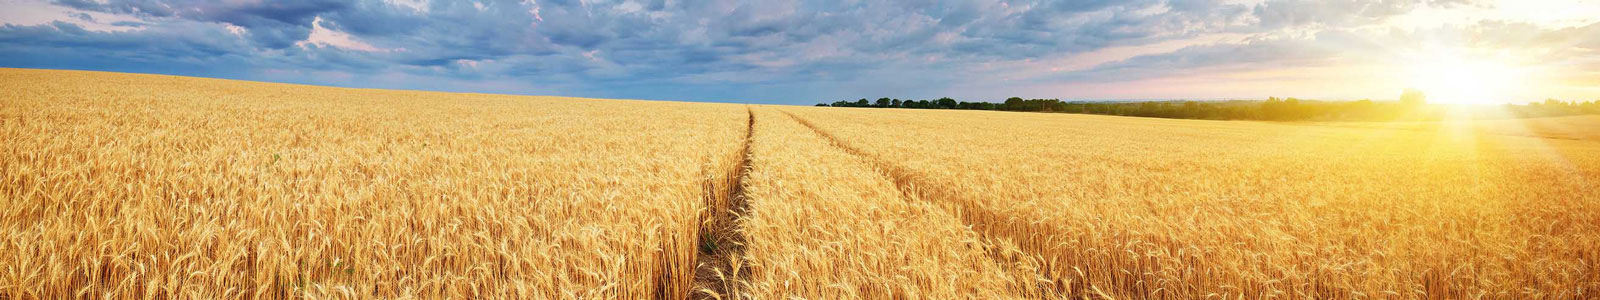 №2661 - Поле пшеницы